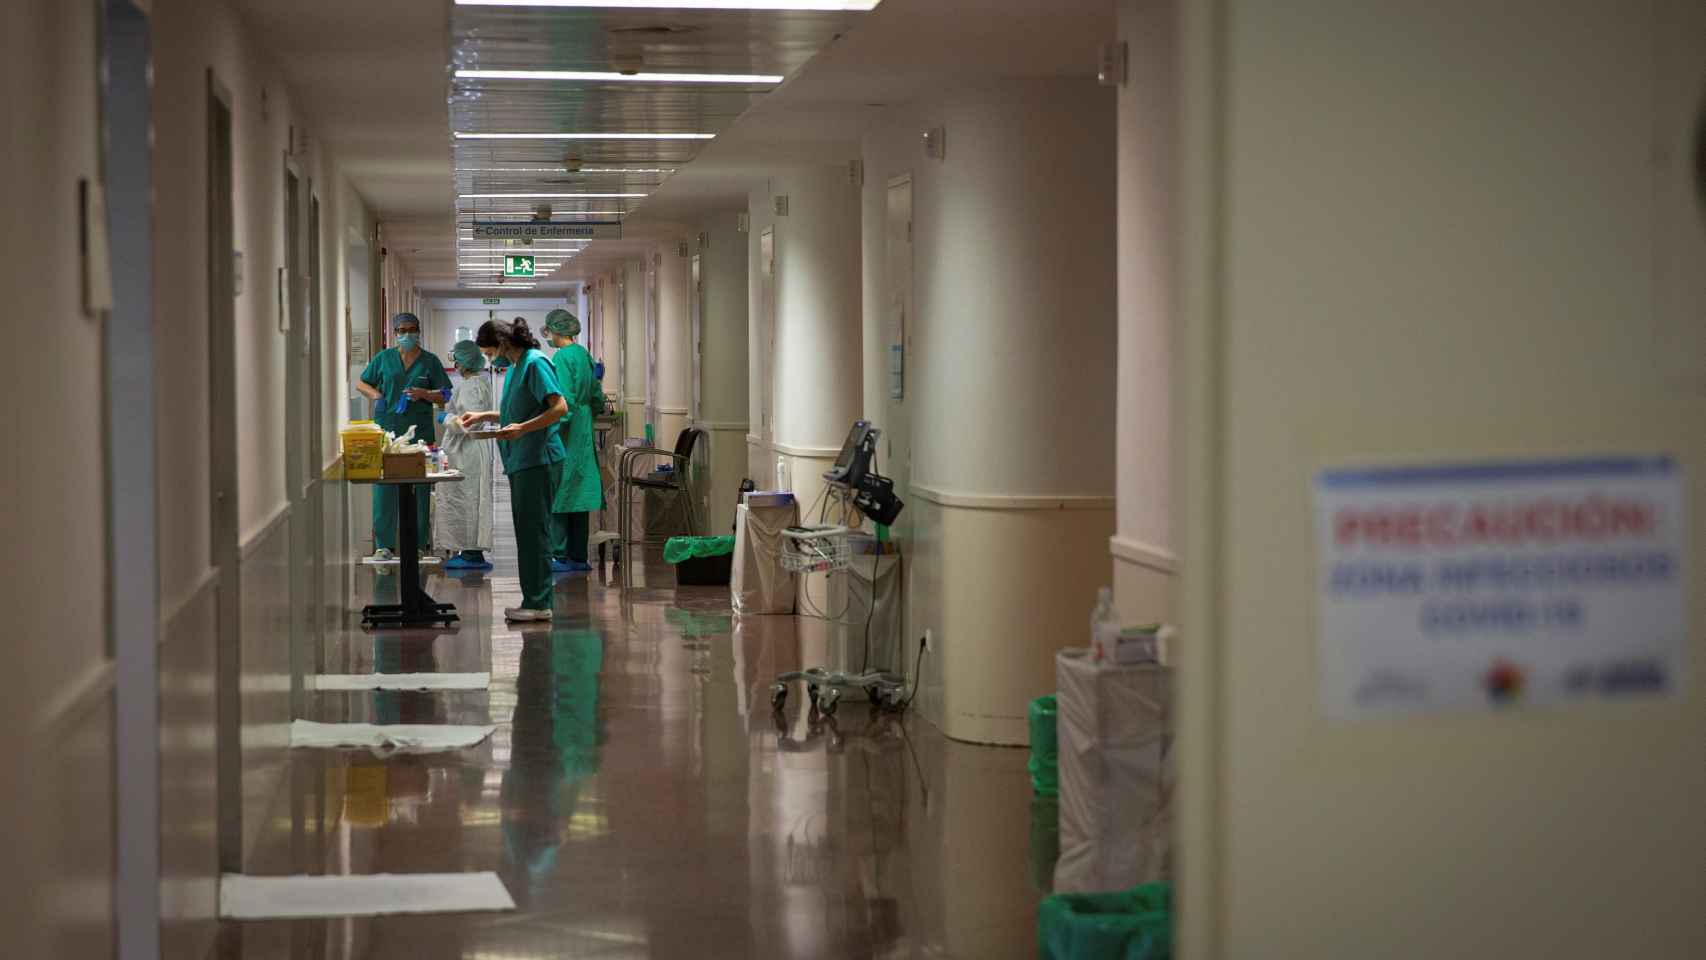 Pasillos de un hospital en La Rioja en plena batalla contra el coronavirus.